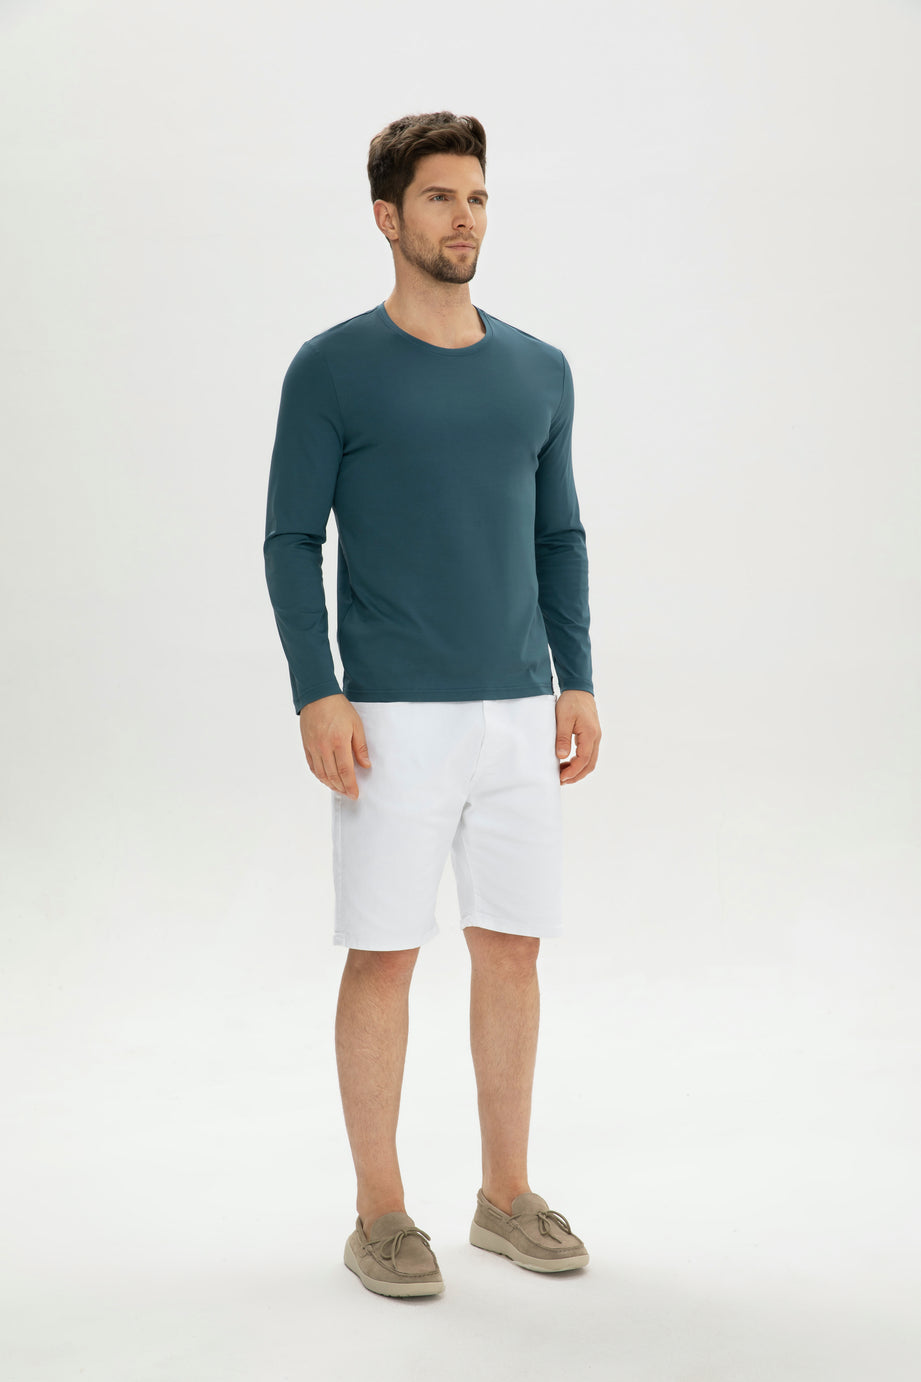 Men's T-shirt Quality Mercerized Cotton V-shaped Pattern